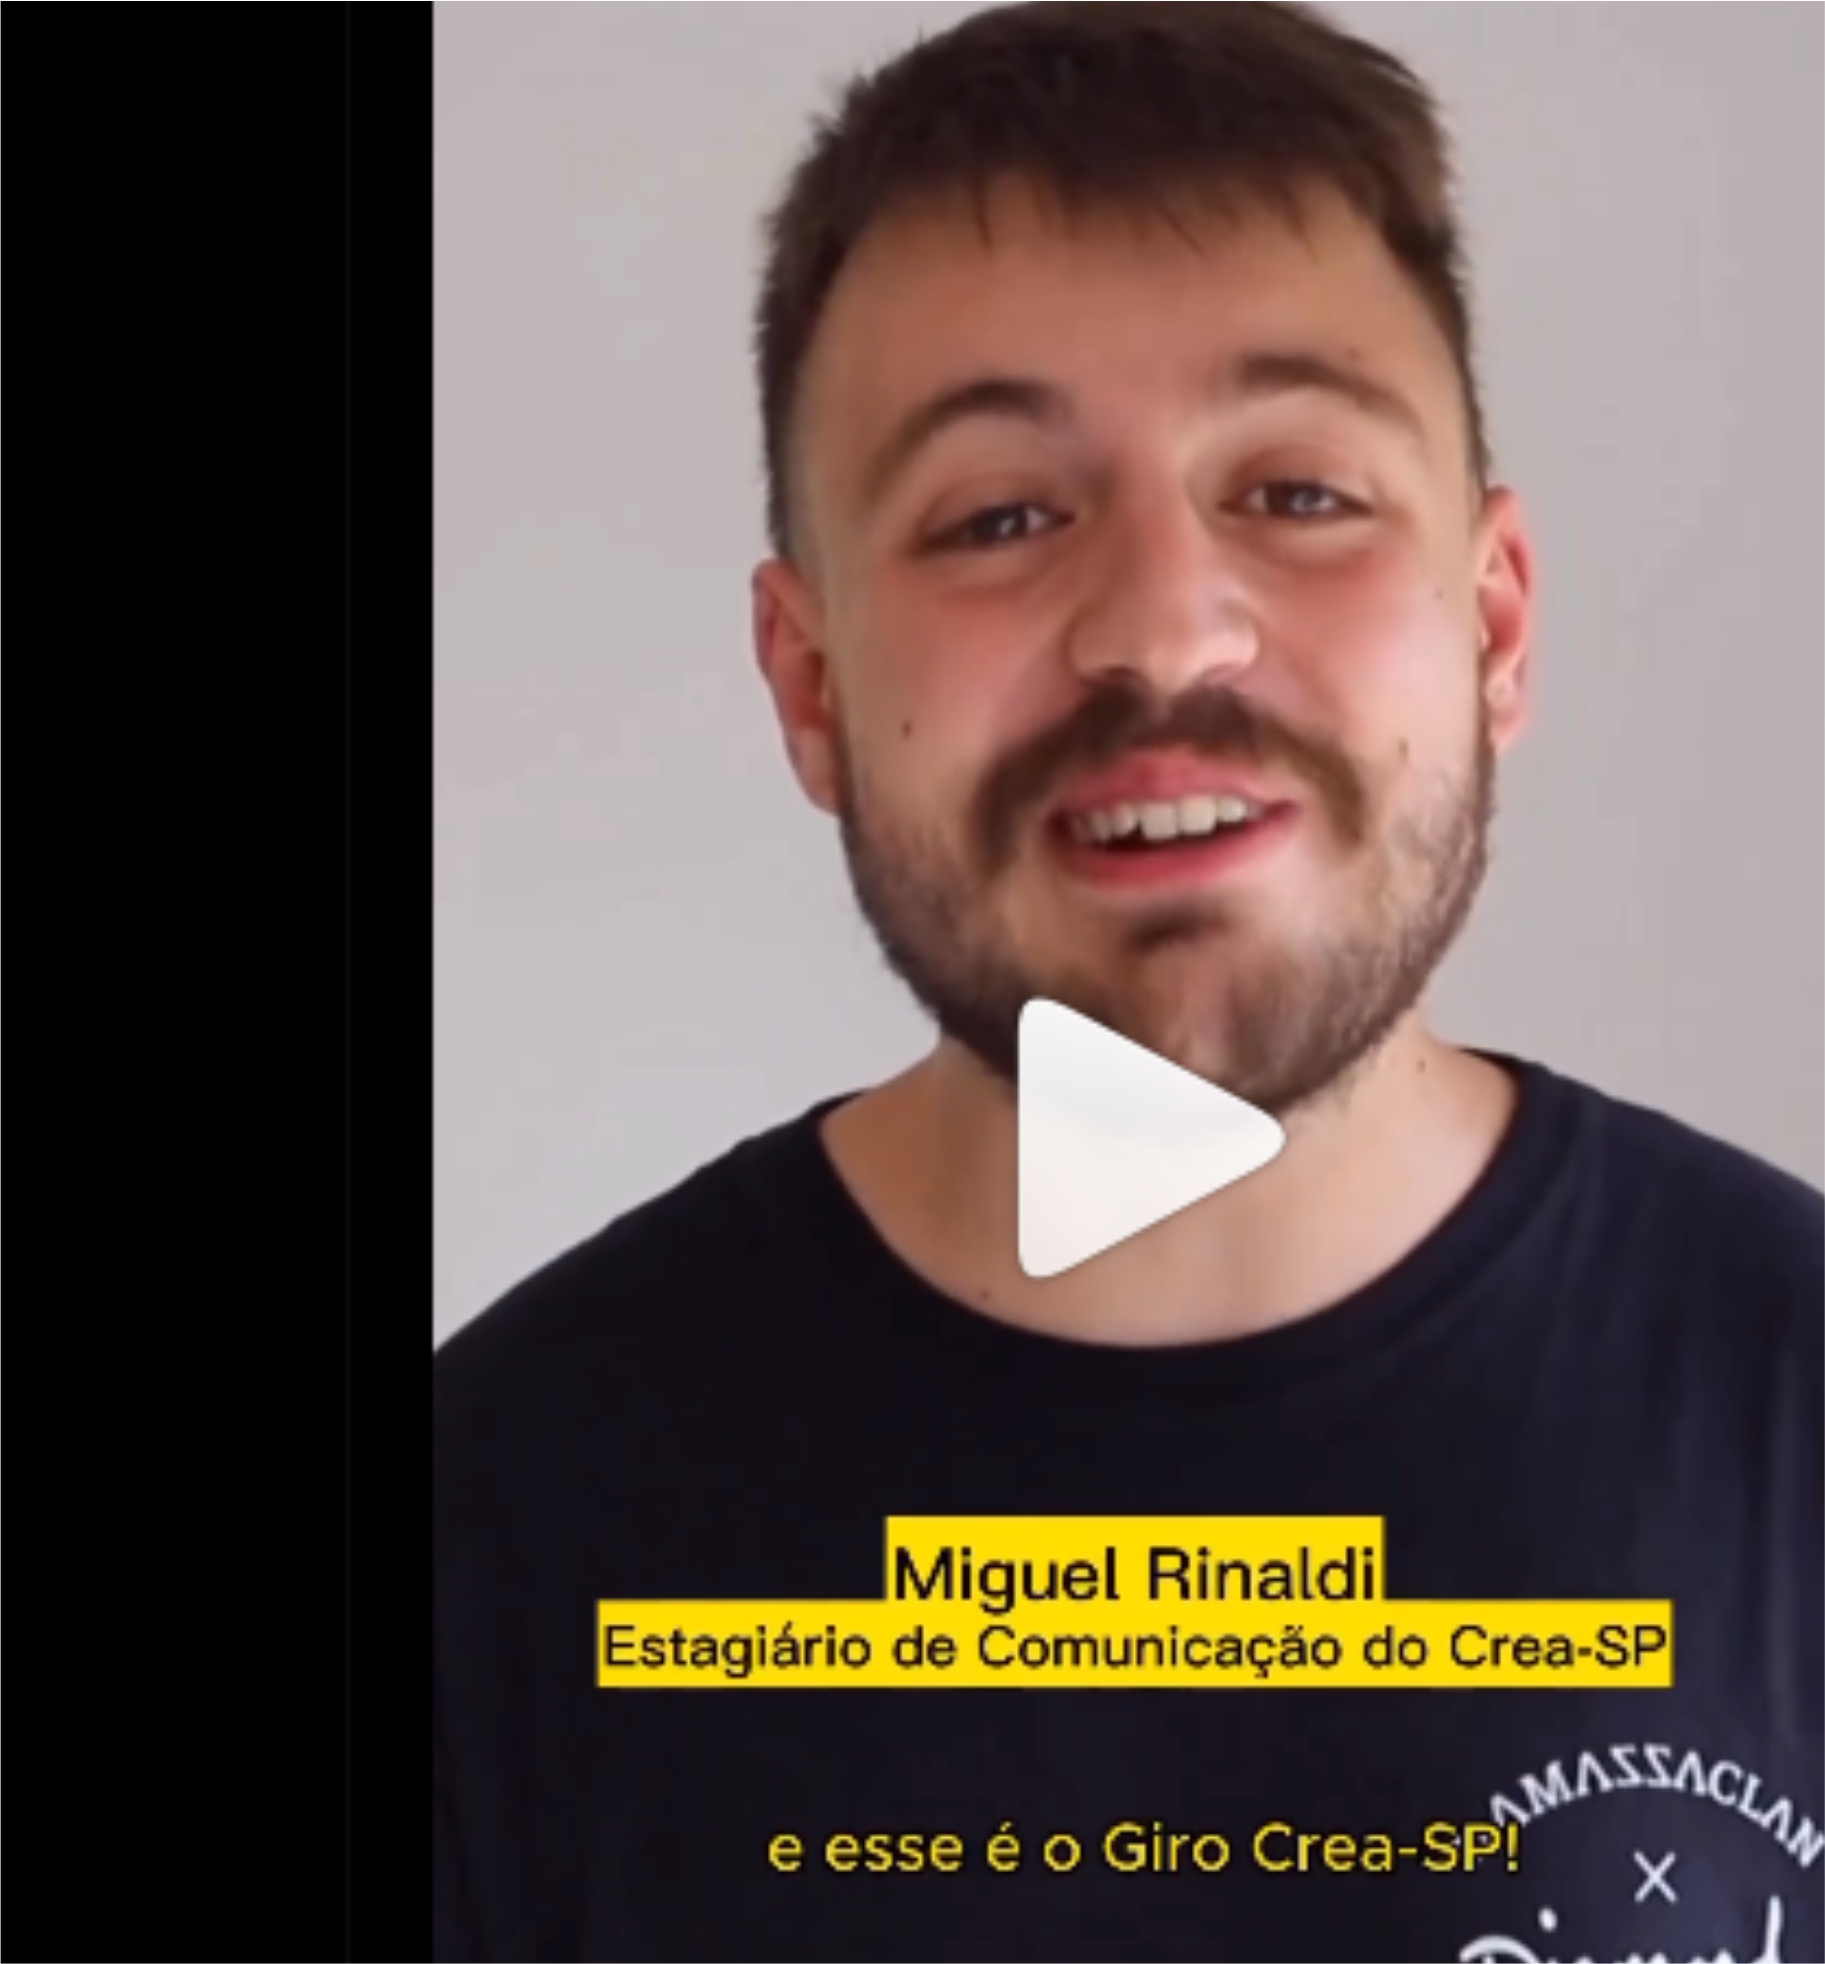 1 Giro Crea-SP - Miguel Rinaldi - Estagiário de Comunicação do Crea-SP